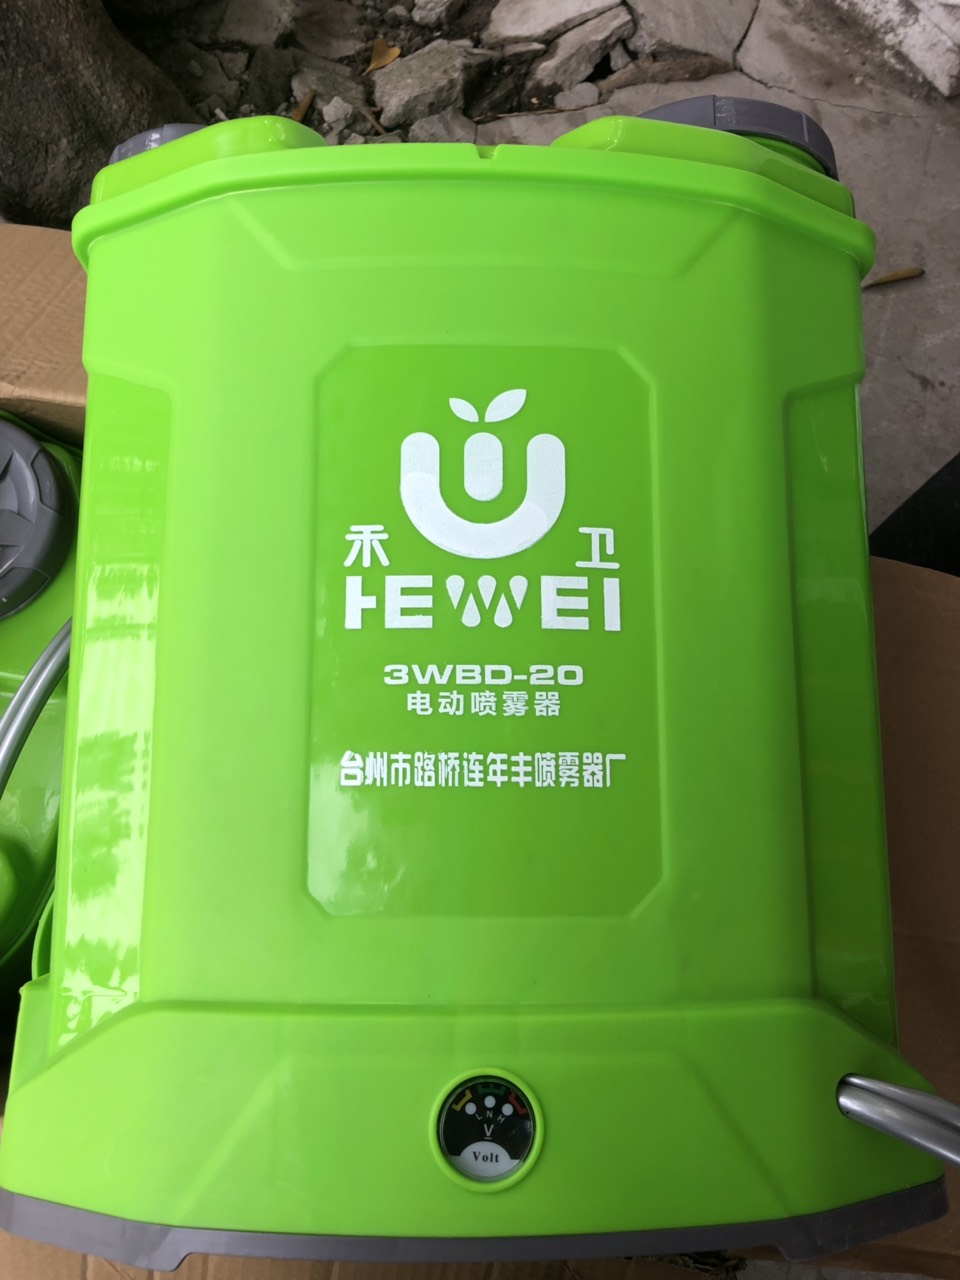 Bình xịt thuốc chạy điện Hewei  20 lít 3WBD-20 ( Bảo Hành Điện Tử )